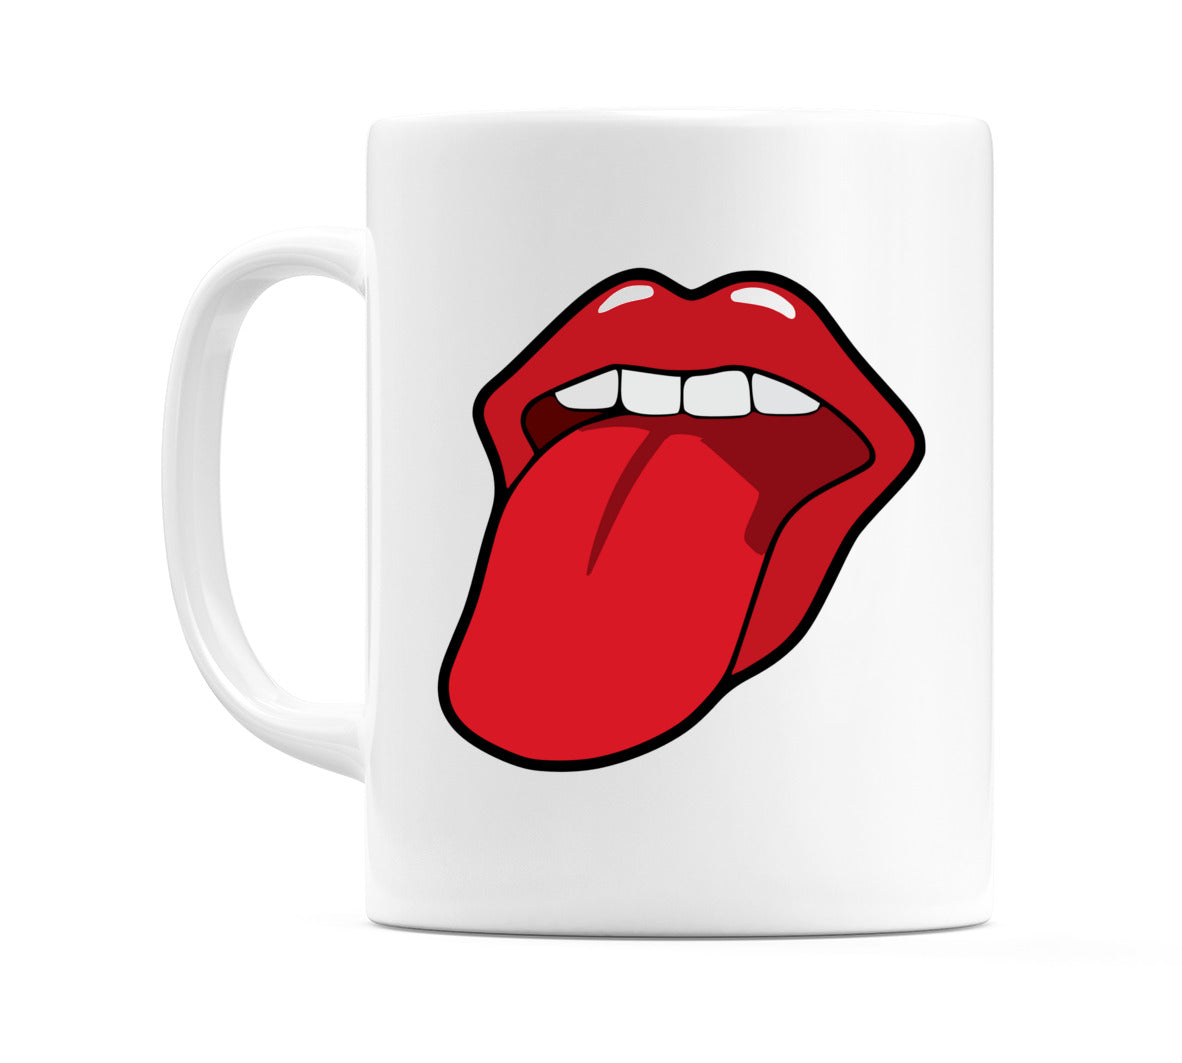 Rolling Stone style Tongue Mug